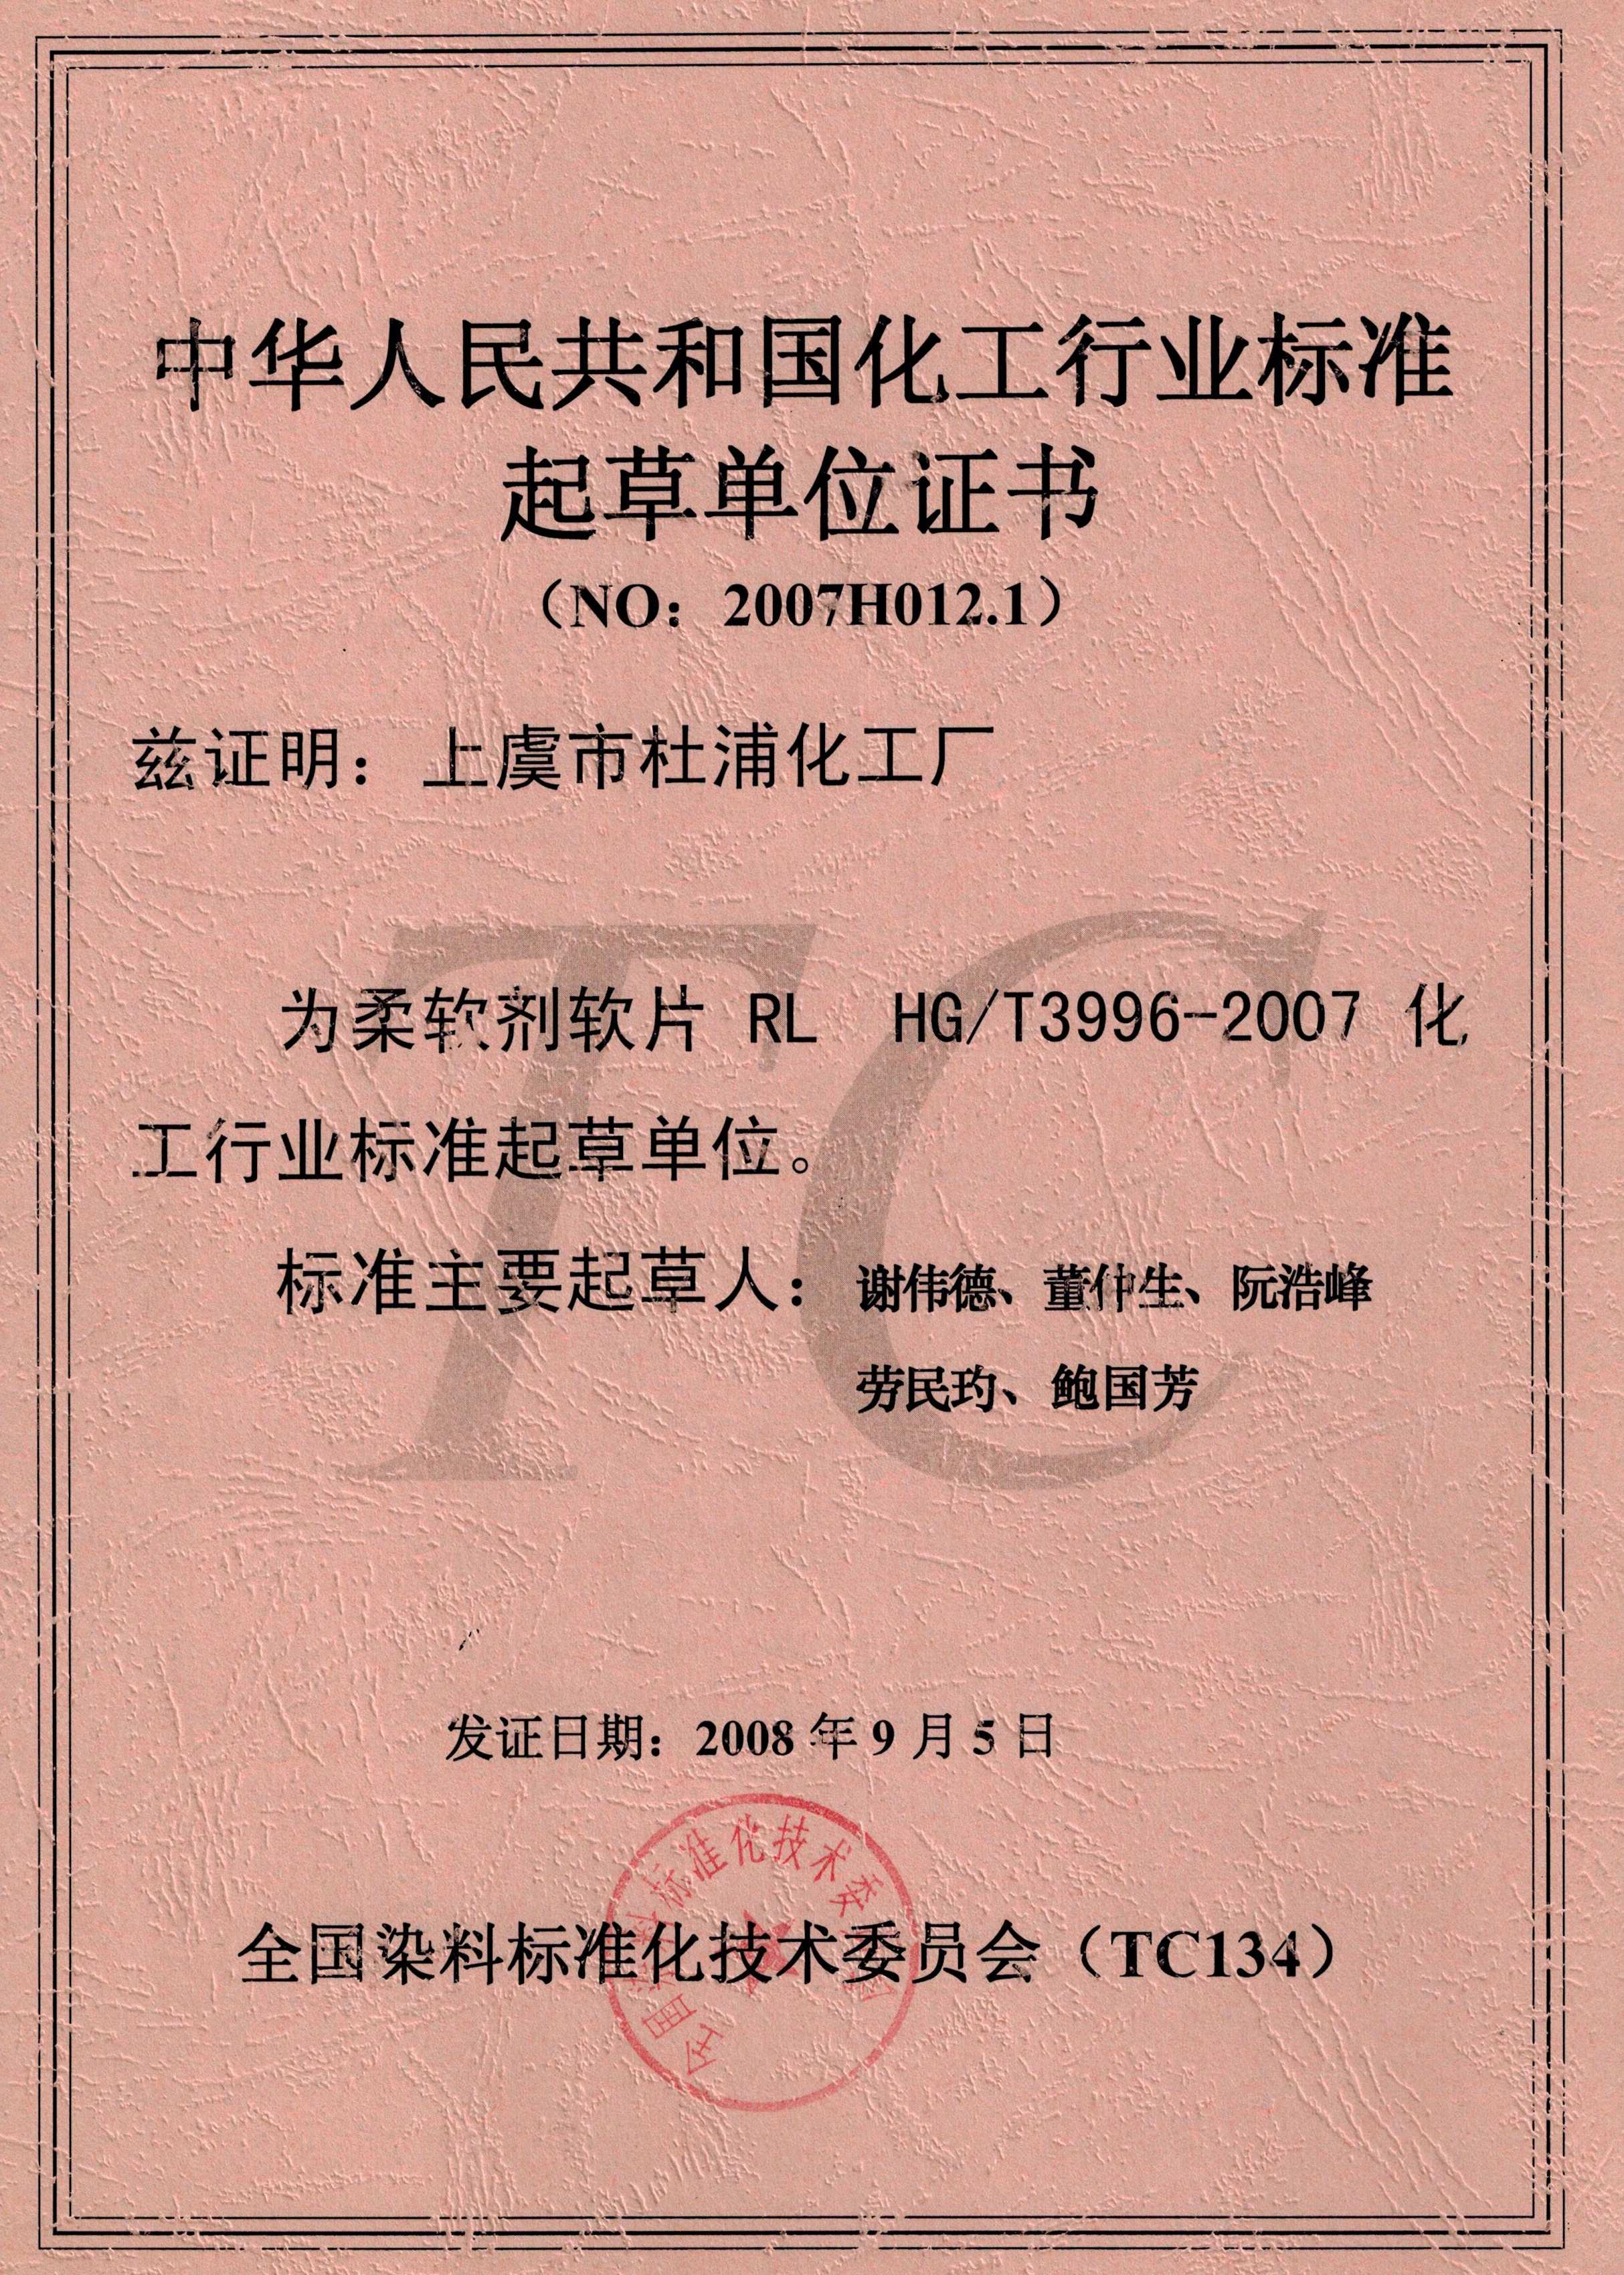 中华人民共和国化工行业标准起草单位证书（NO:2007H012.1）